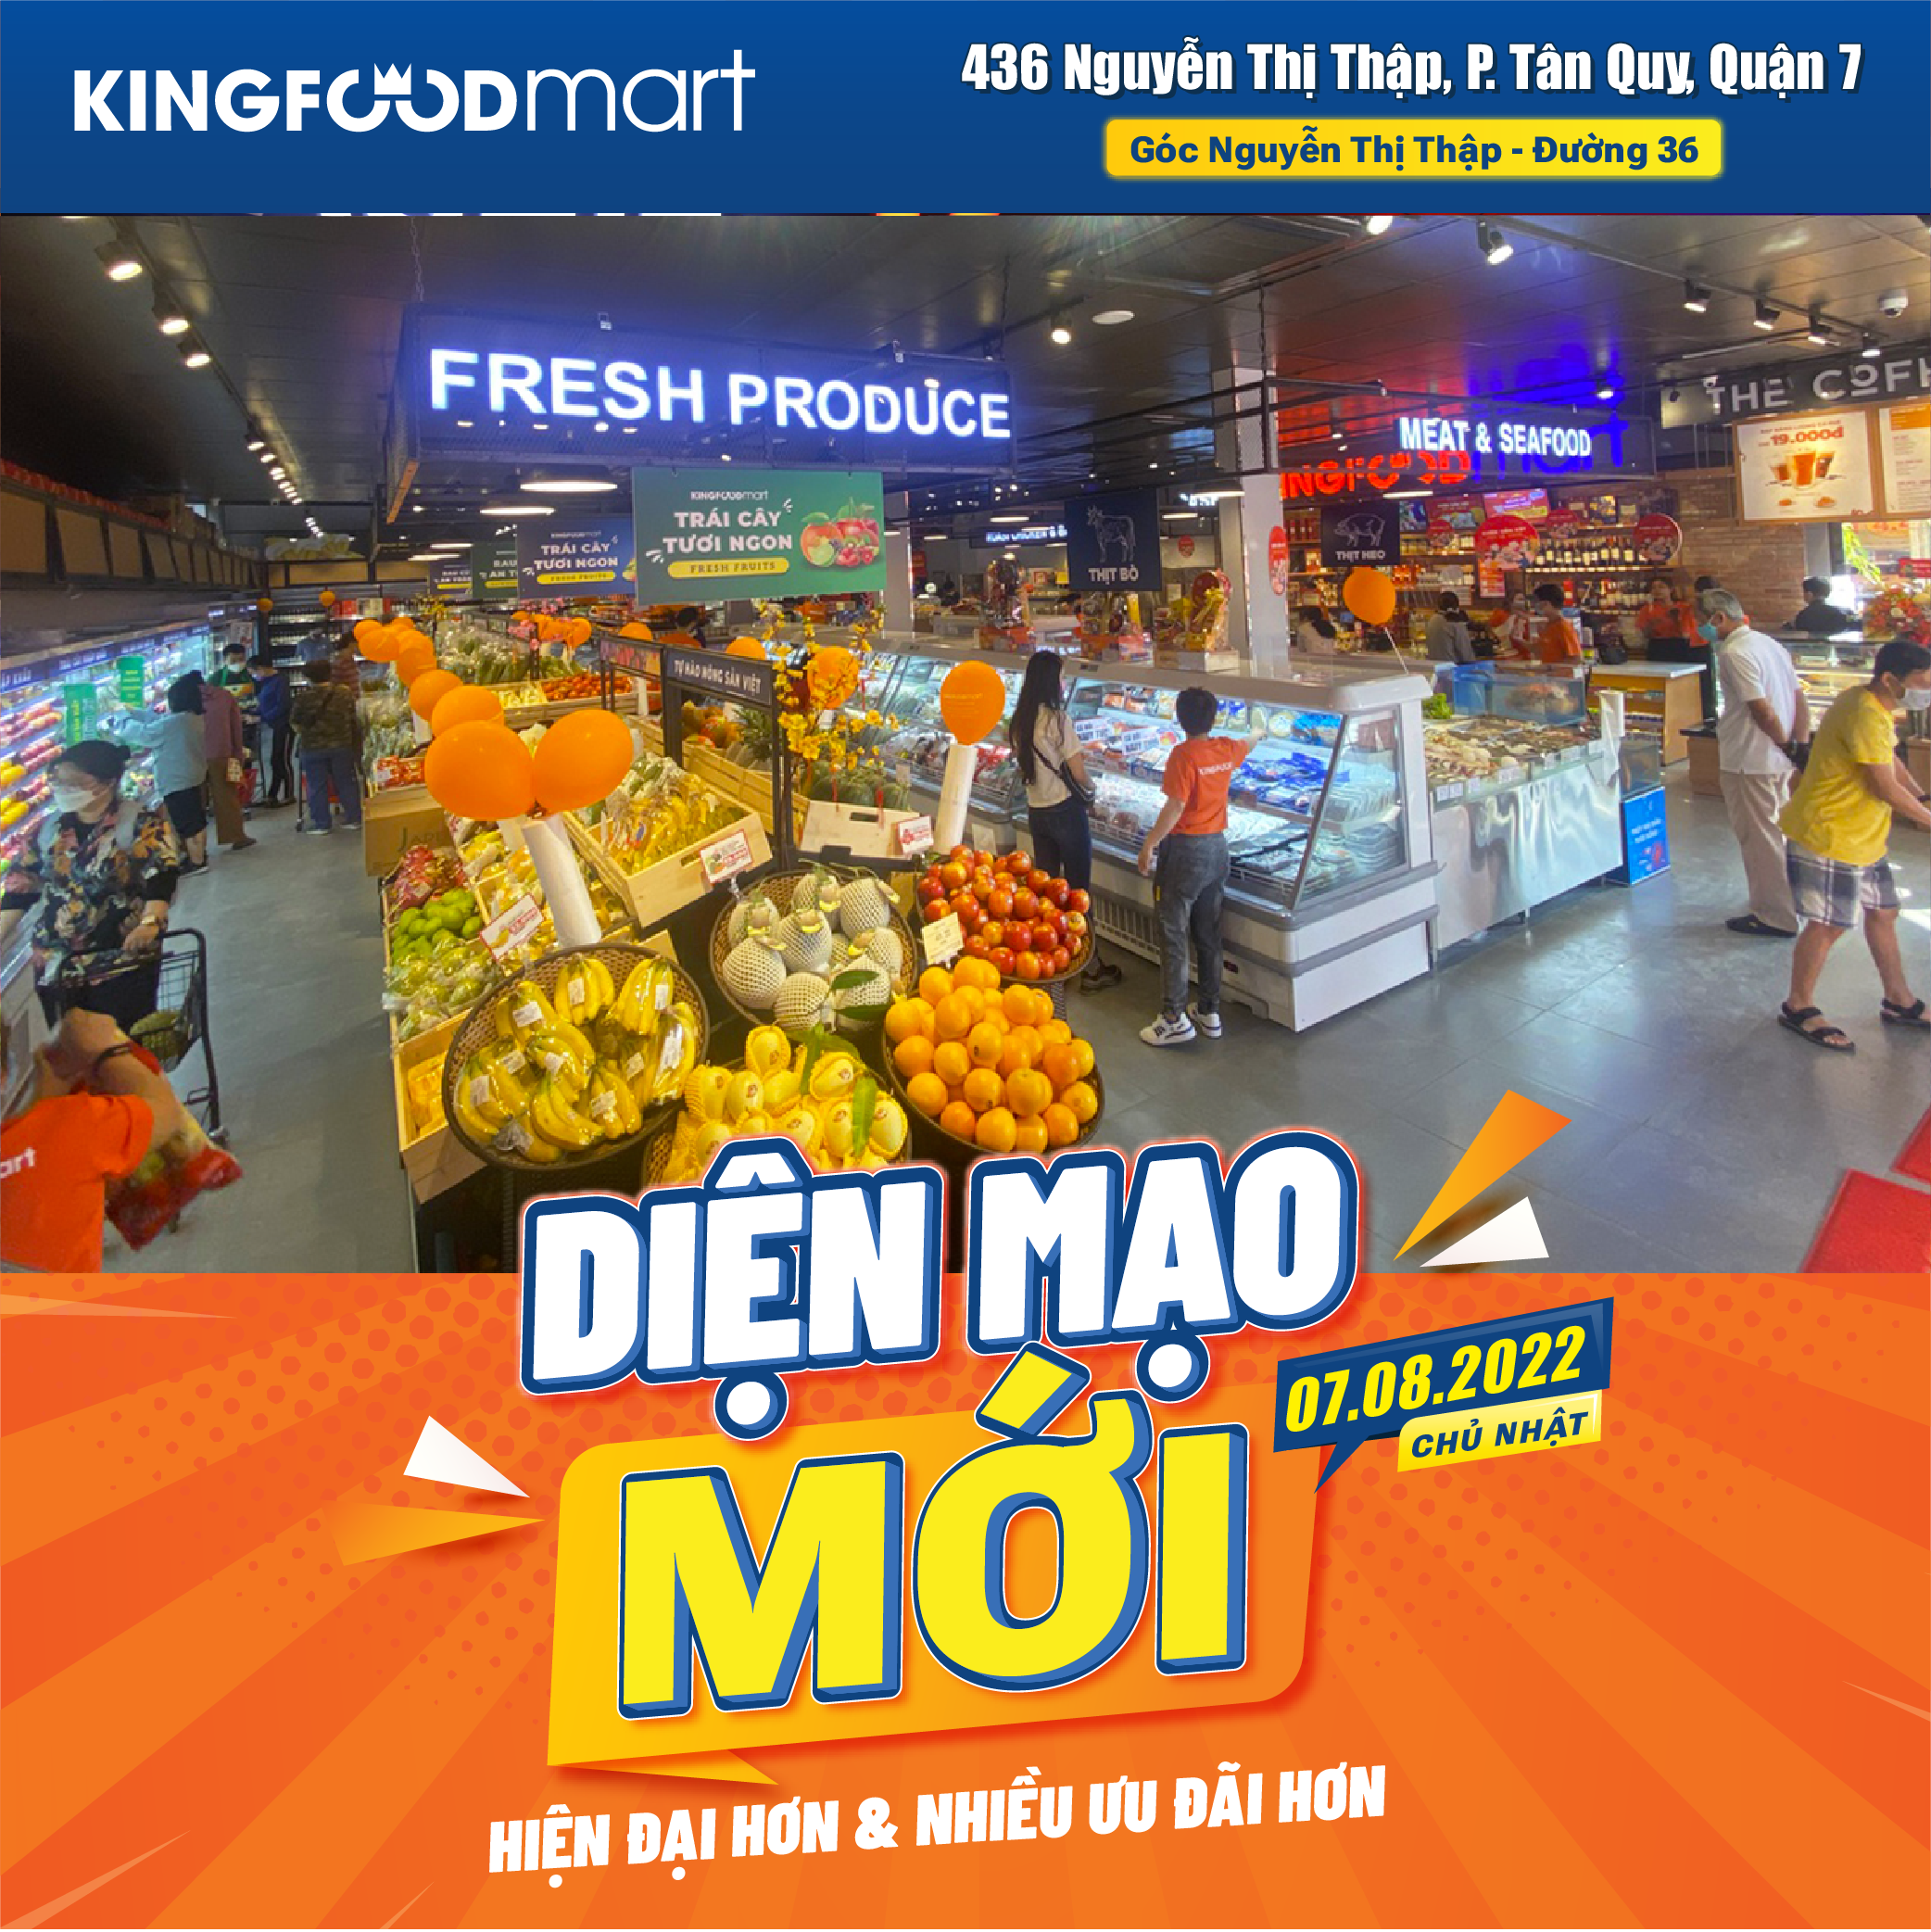 Mừng Kingfoodmart Nguyễn Thị Thập Diện Mạo Mới, Nhiều Ưu Đãi HOT!!!